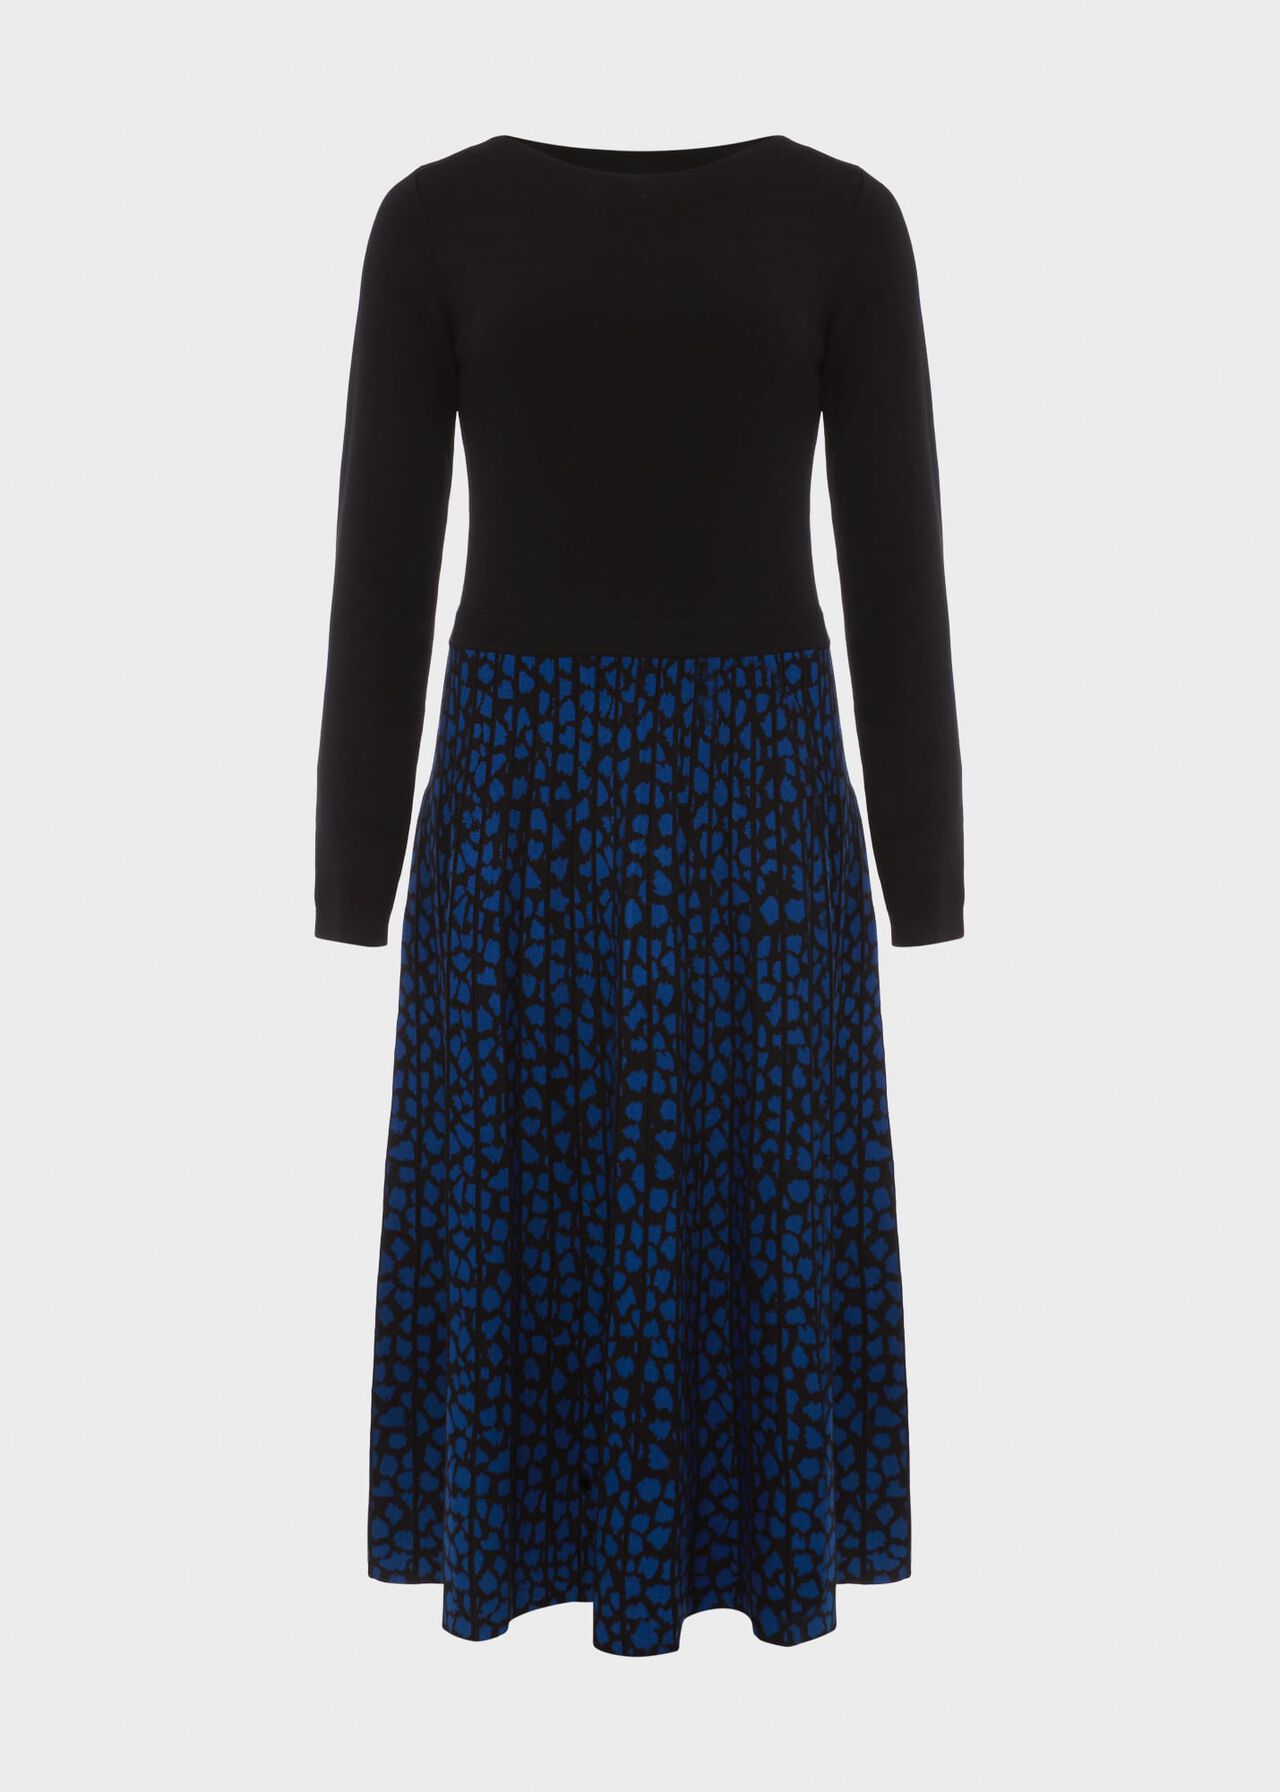 Elena Knit Dress, Black Blue, hi-res